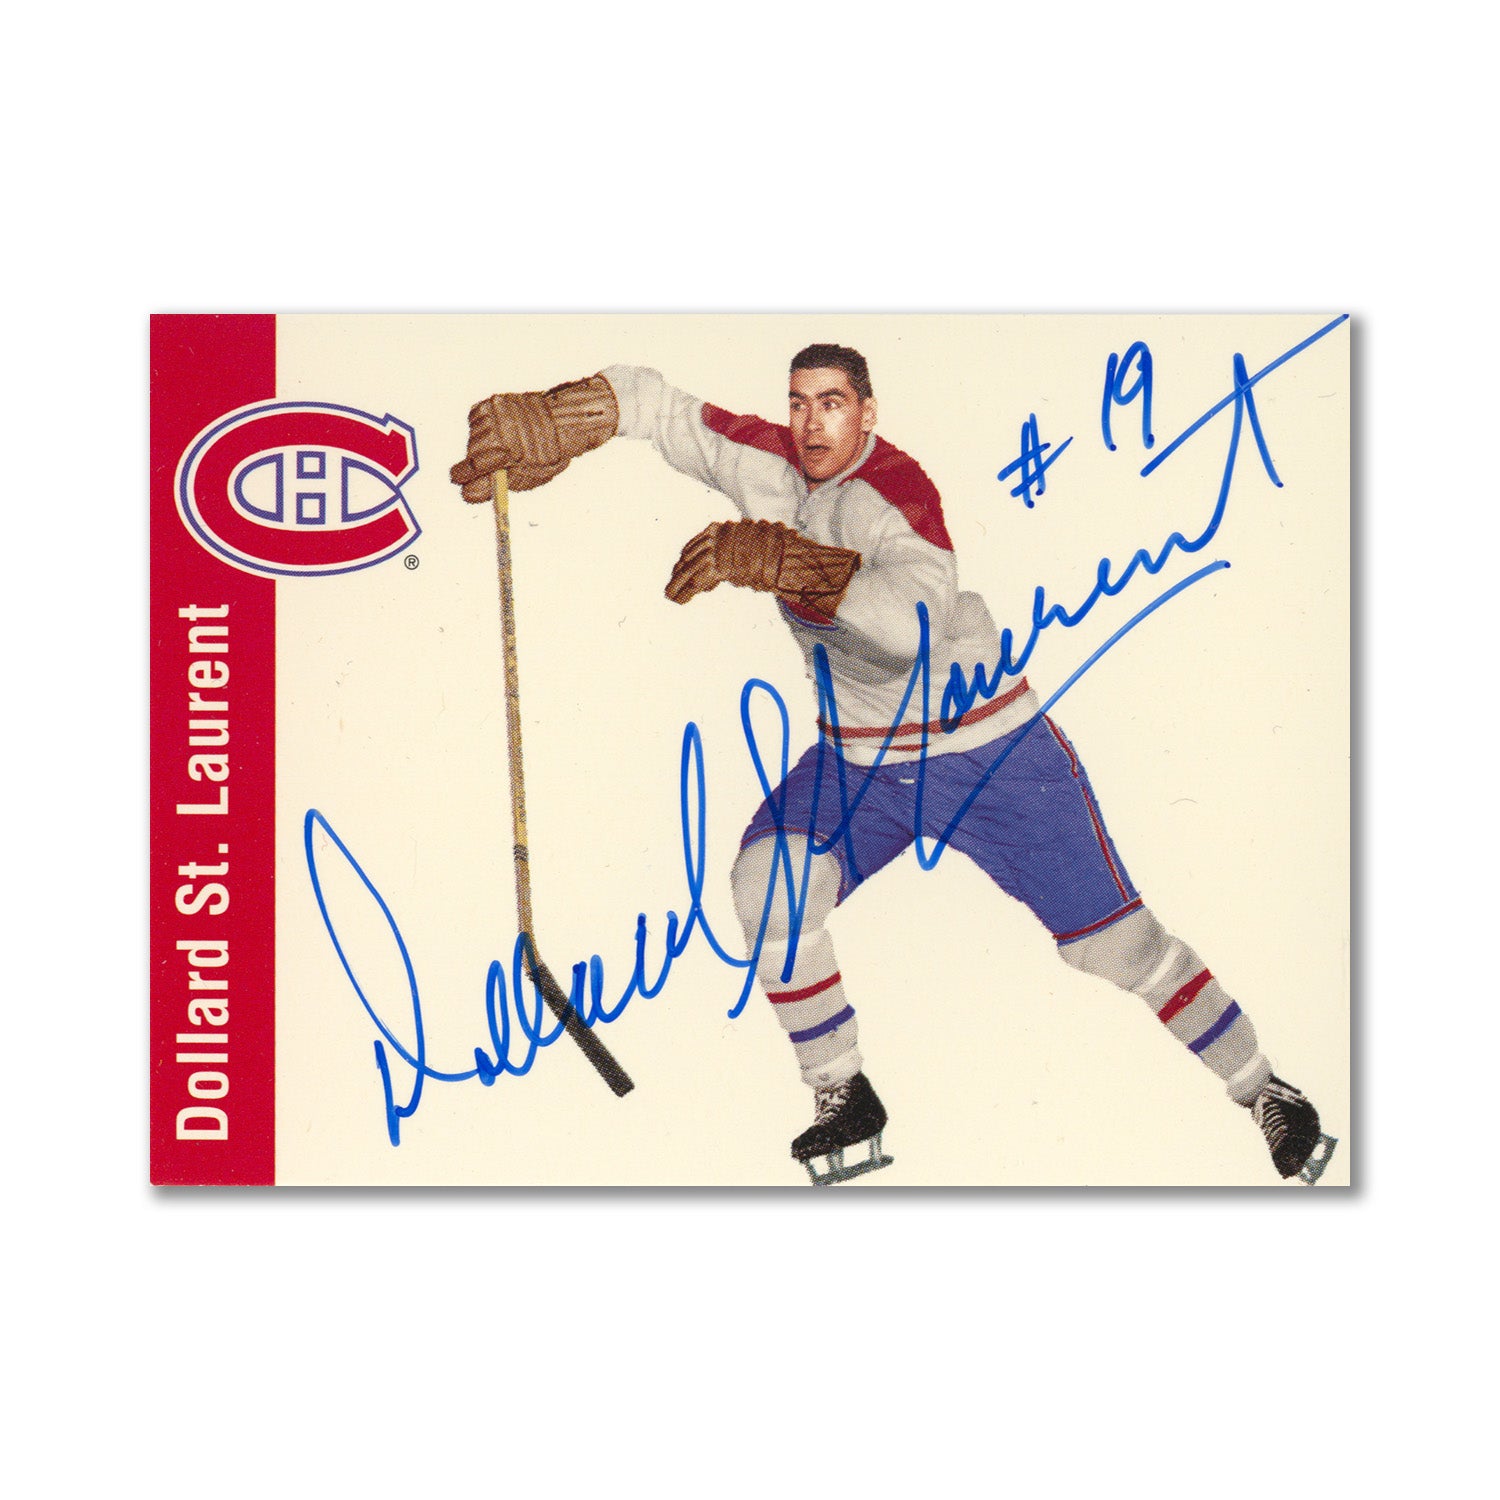 Autographed 1994 Parkhurst Missing Link #69 Dollard St. Laurent Hockey Card